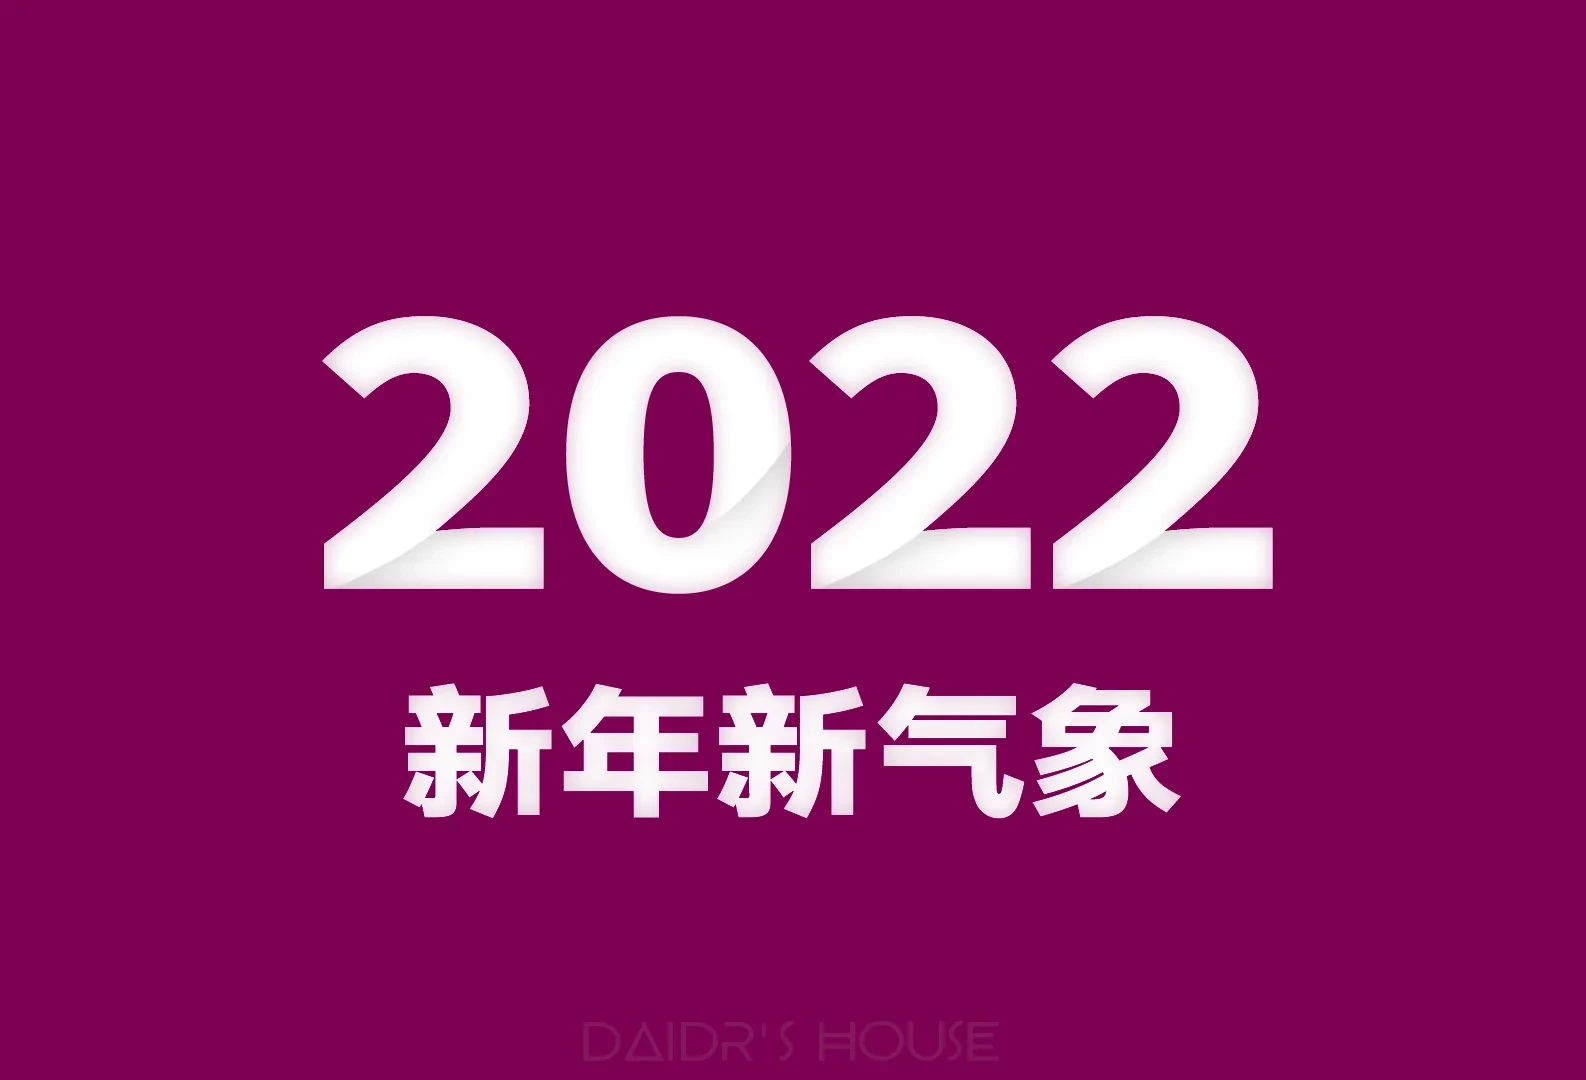 你好! 2022